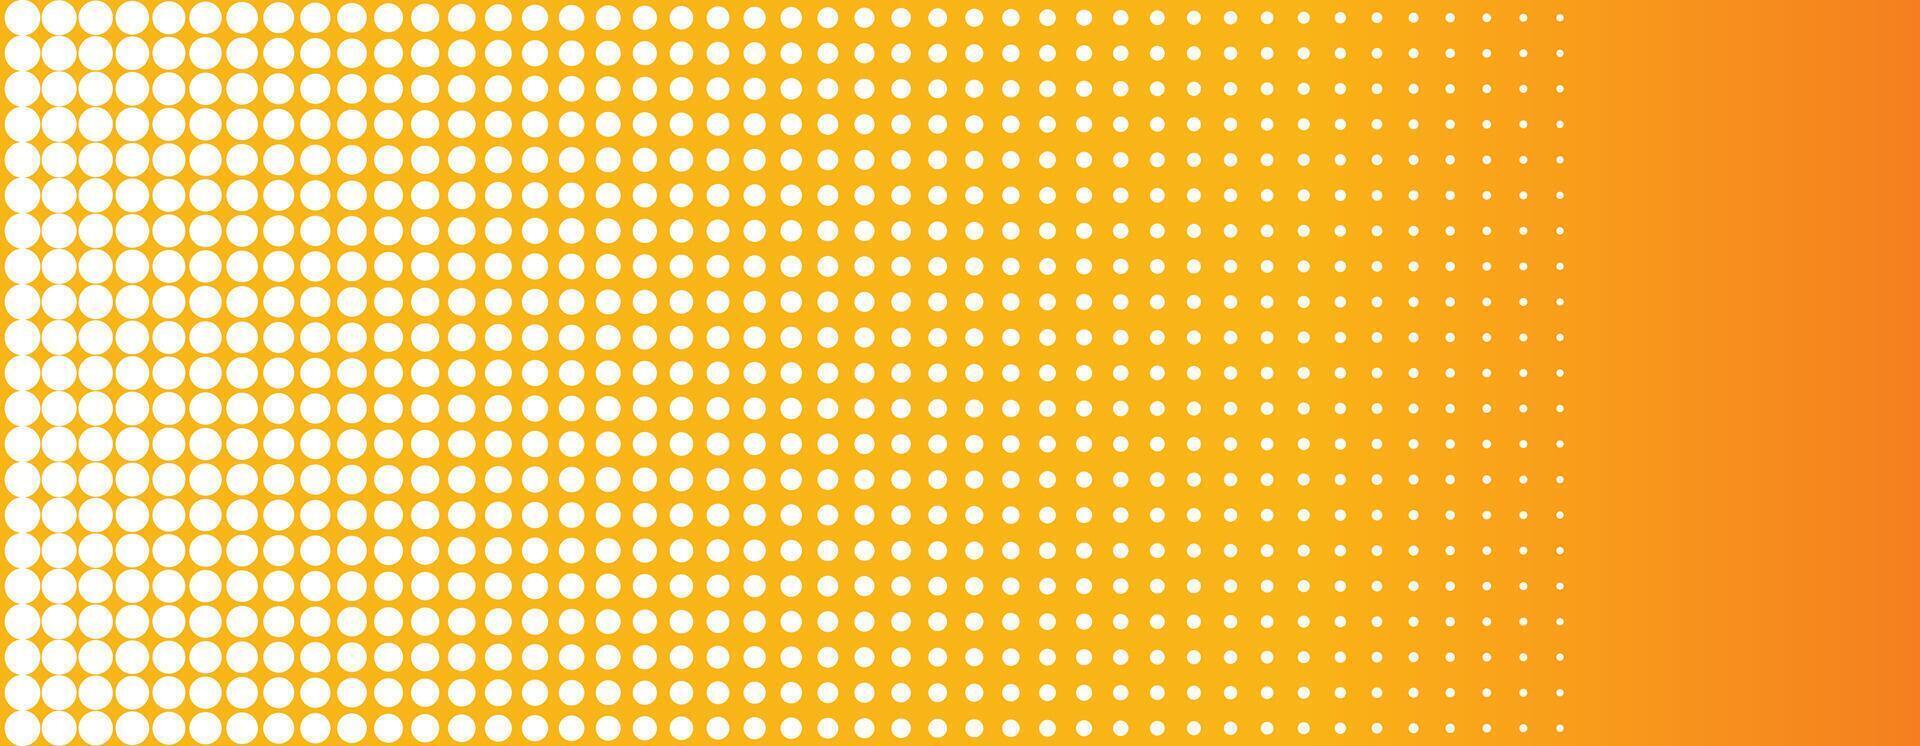 resumen amarillo y blanco trama de semitonos amplio bandera vector